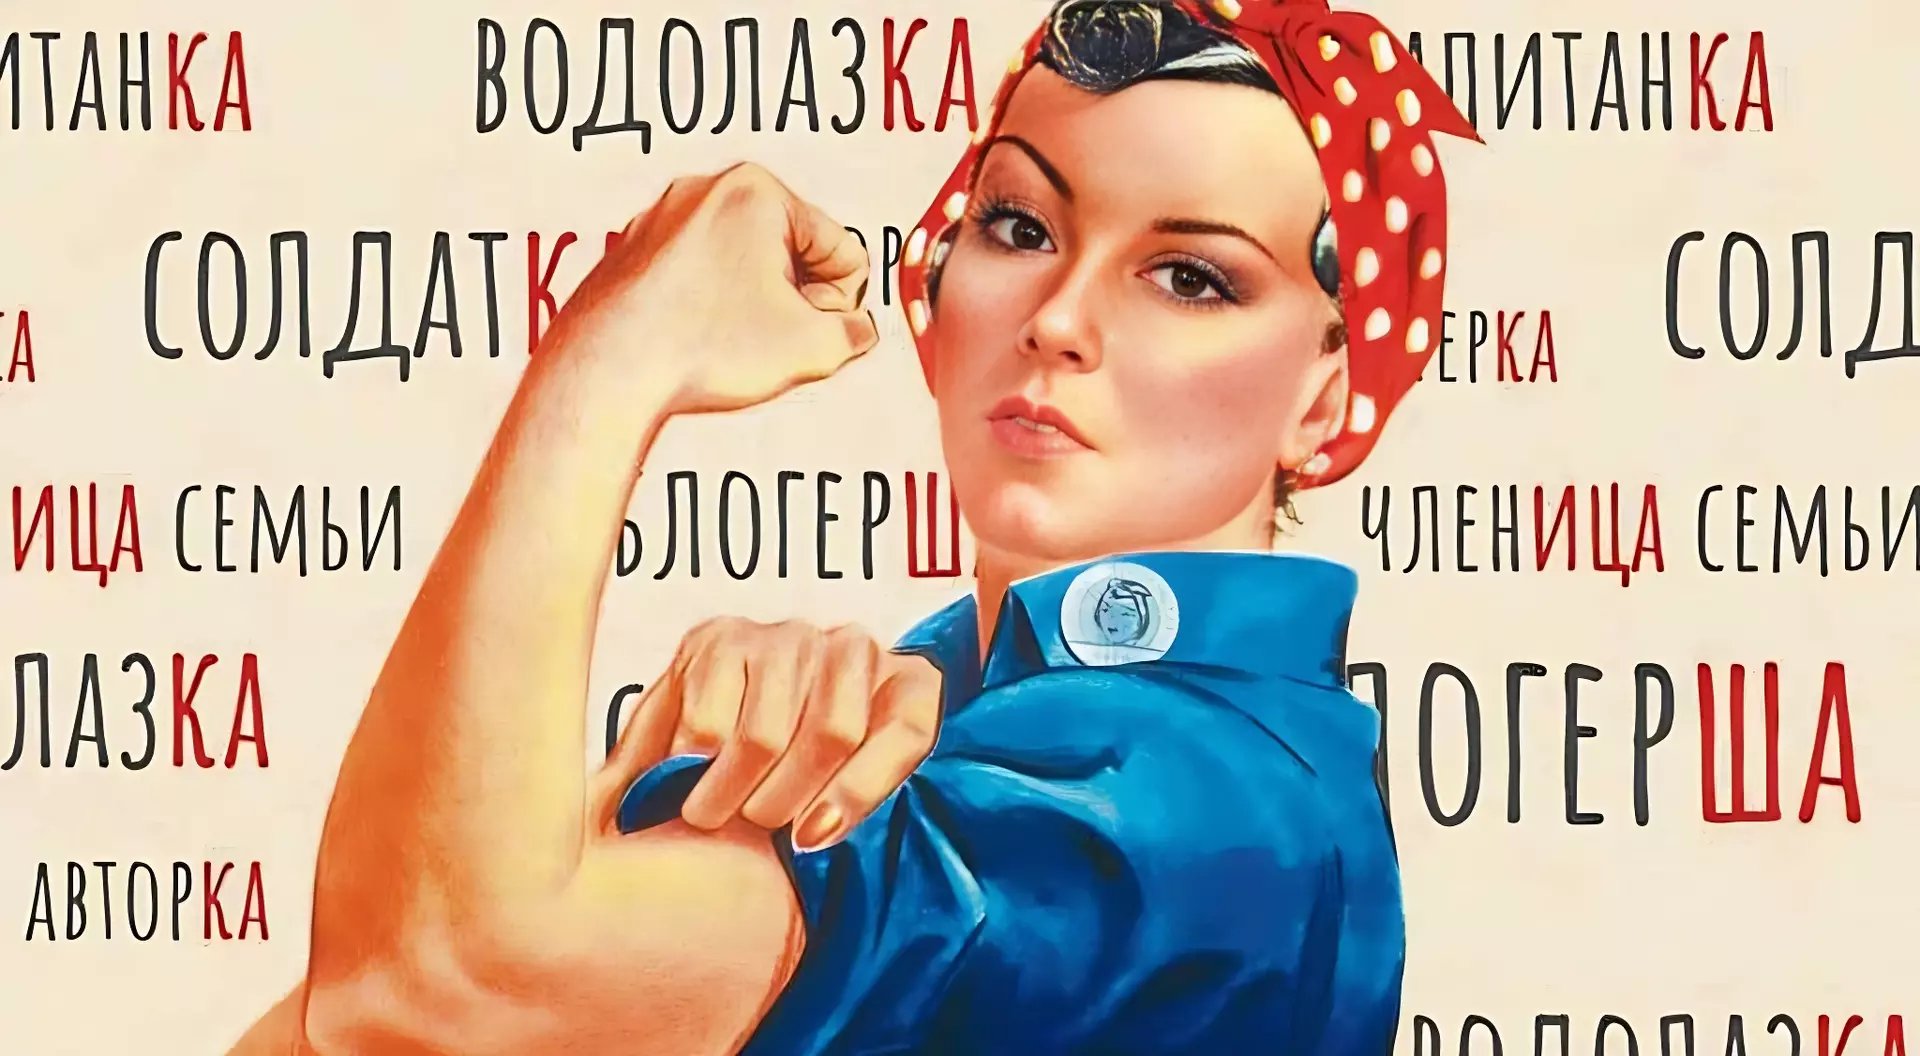 Феминитивы в рф. Феминитивы. Феминитивы картинки. Феминитивы на советских плакатах. Феминитивы примеры.